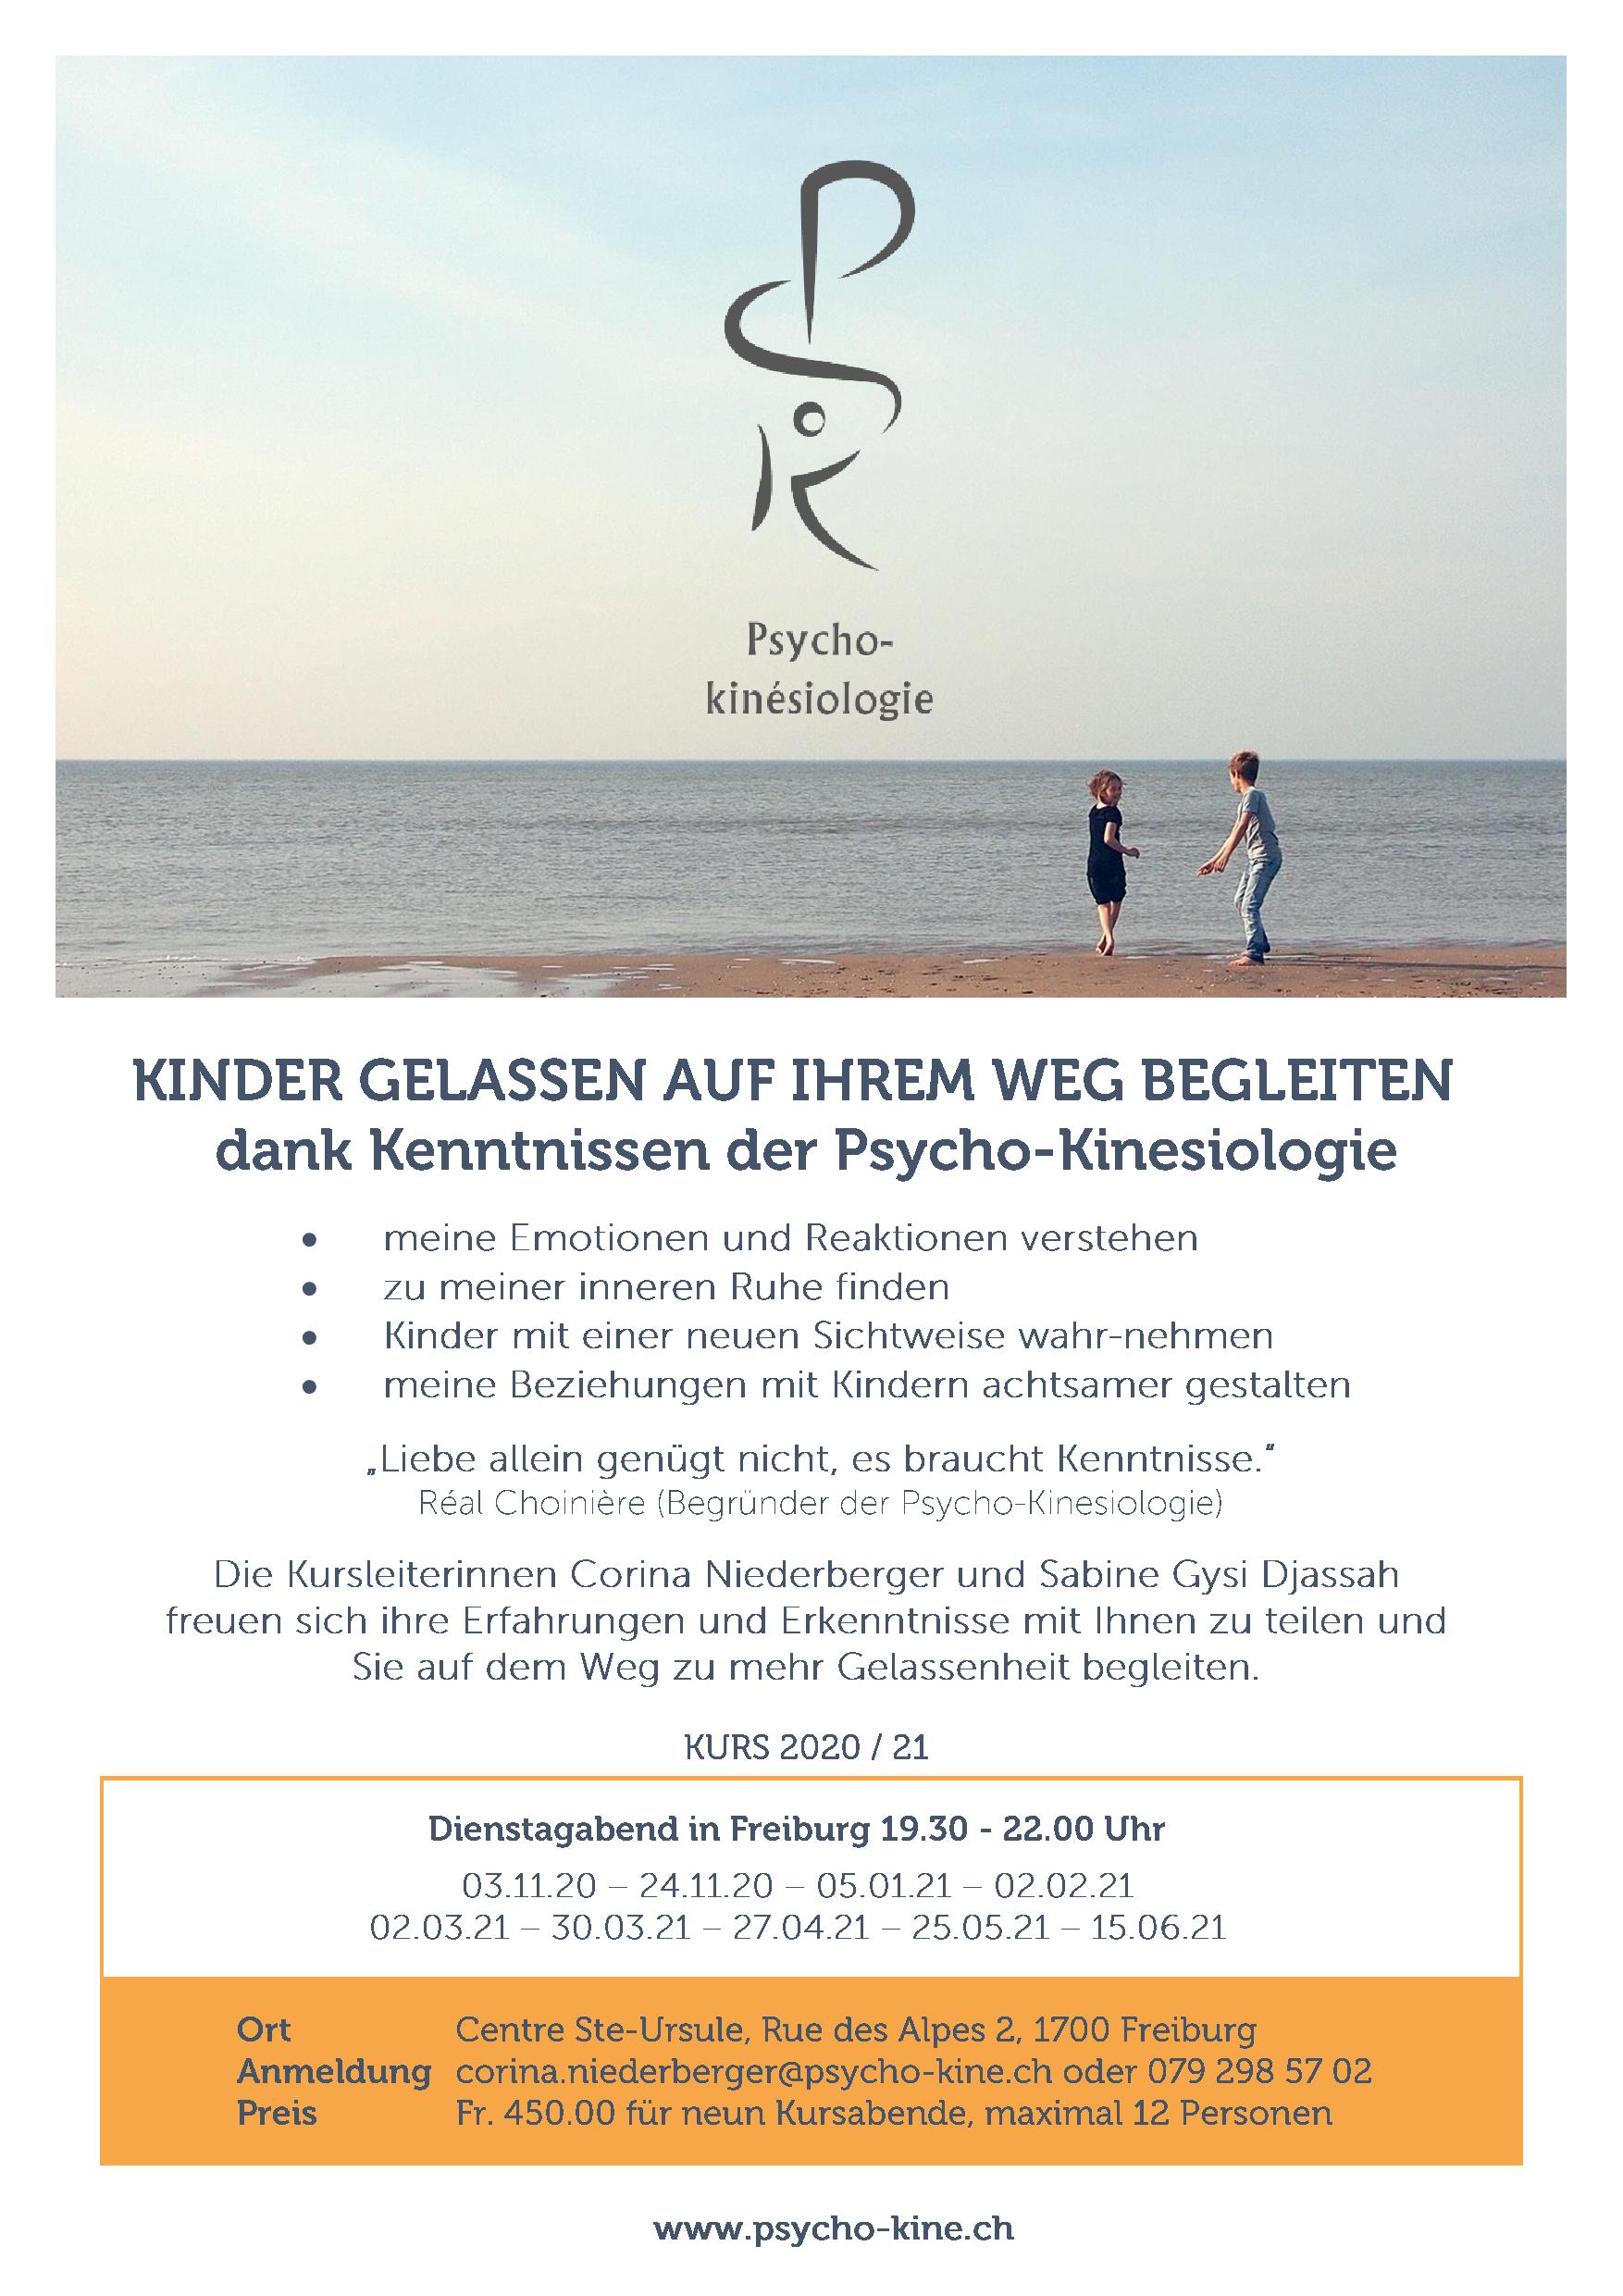 2020_21_Flyer_Kinder_gelassen_begleiten_Freiburg.jpg